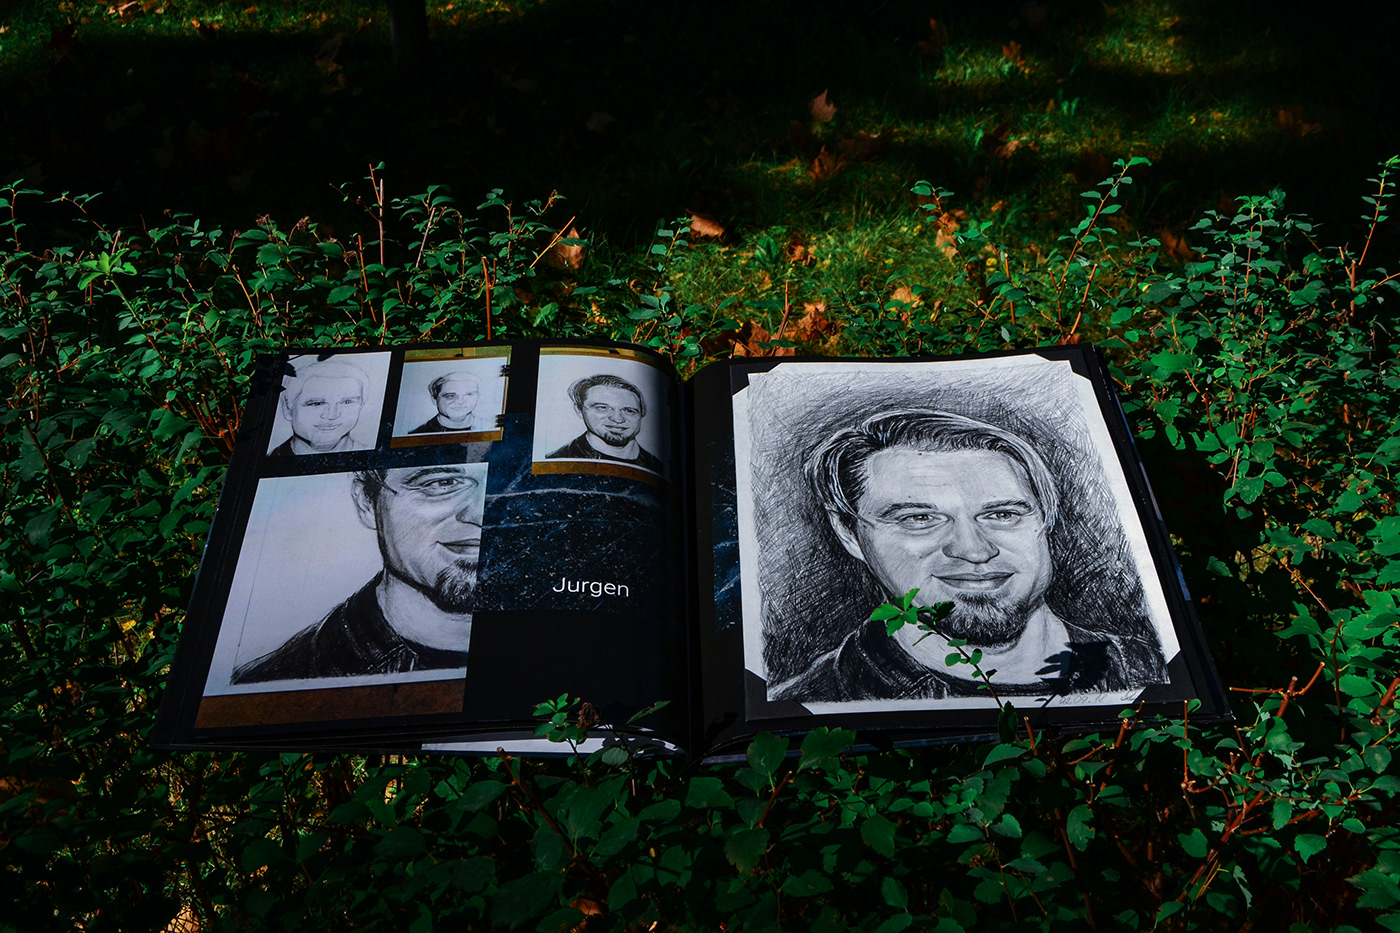 полиграфия графическийдизайн рисунок artwork Drawing  painting   Photography  portrait portraitbook sketch